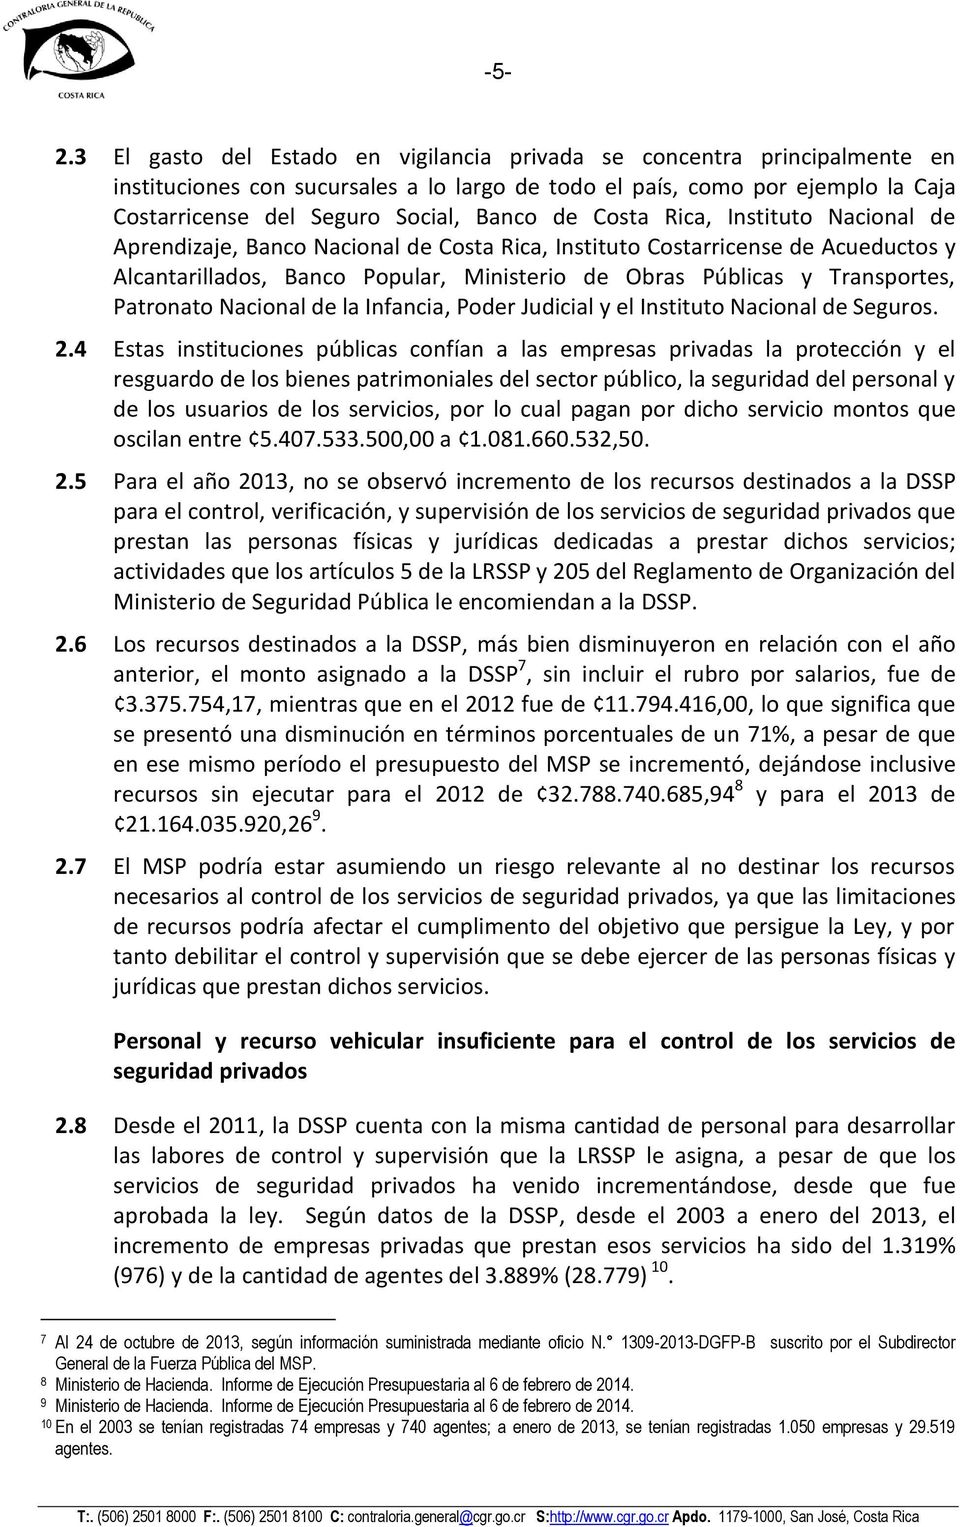 Transportes, Patronato Nacional de la Infancia, Poder Judicial y el Instituto Nacional de Seguros. 2.